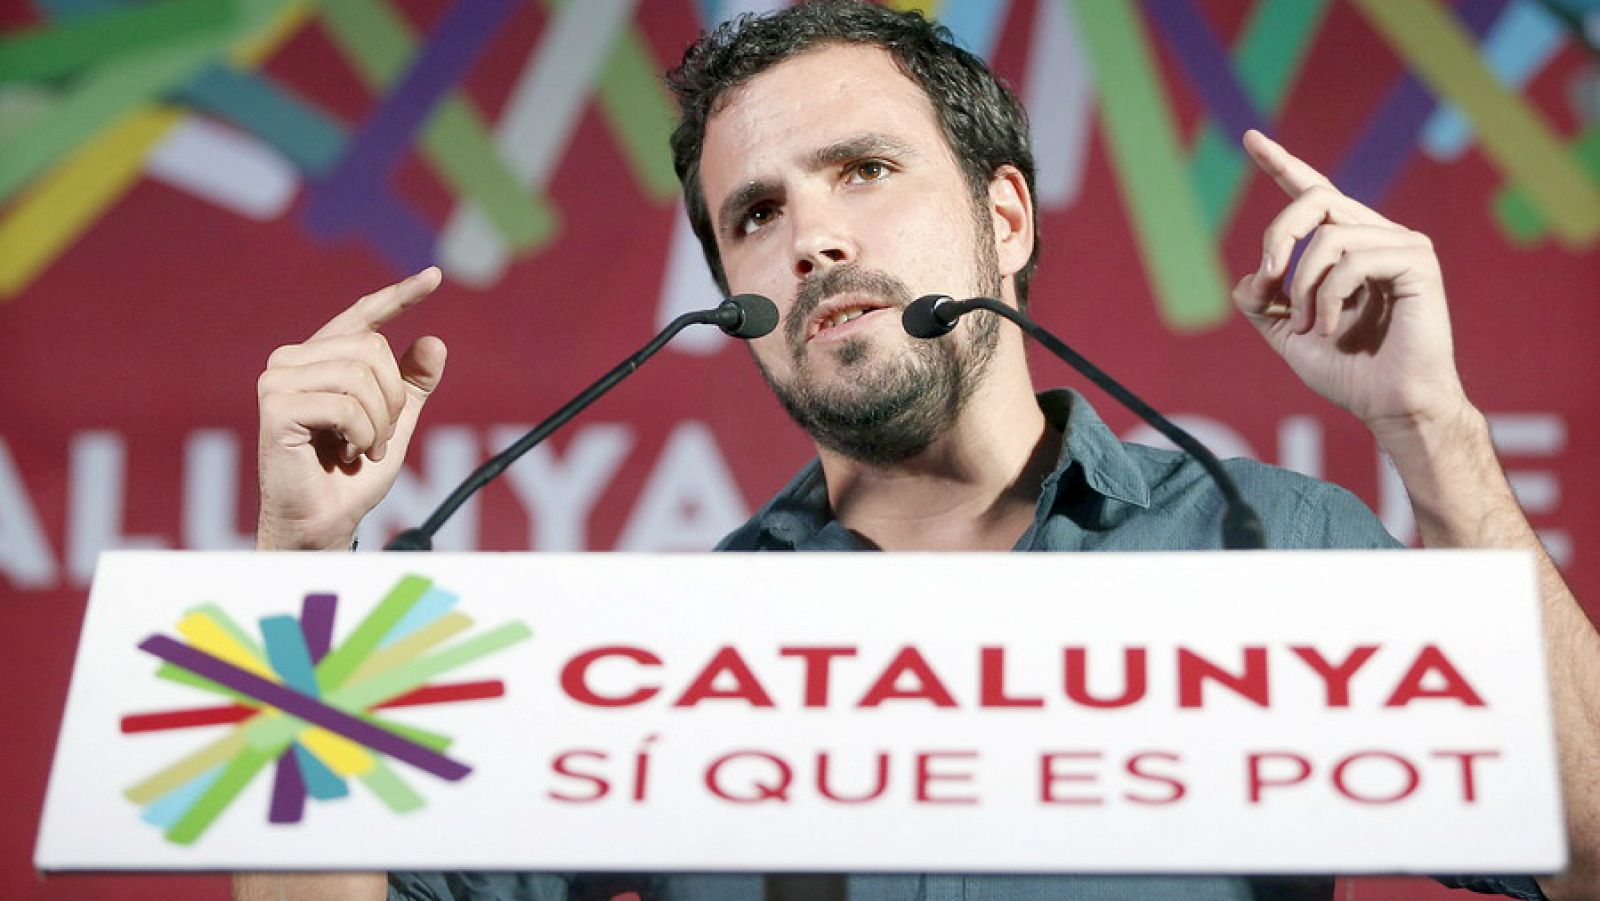 Radio 5 Actualidad - Elecciones catalanas 2015 - Alberto Garzón: "Ha fracasado estrepitosamente la estrategia de Mas" - Escuchar ahora